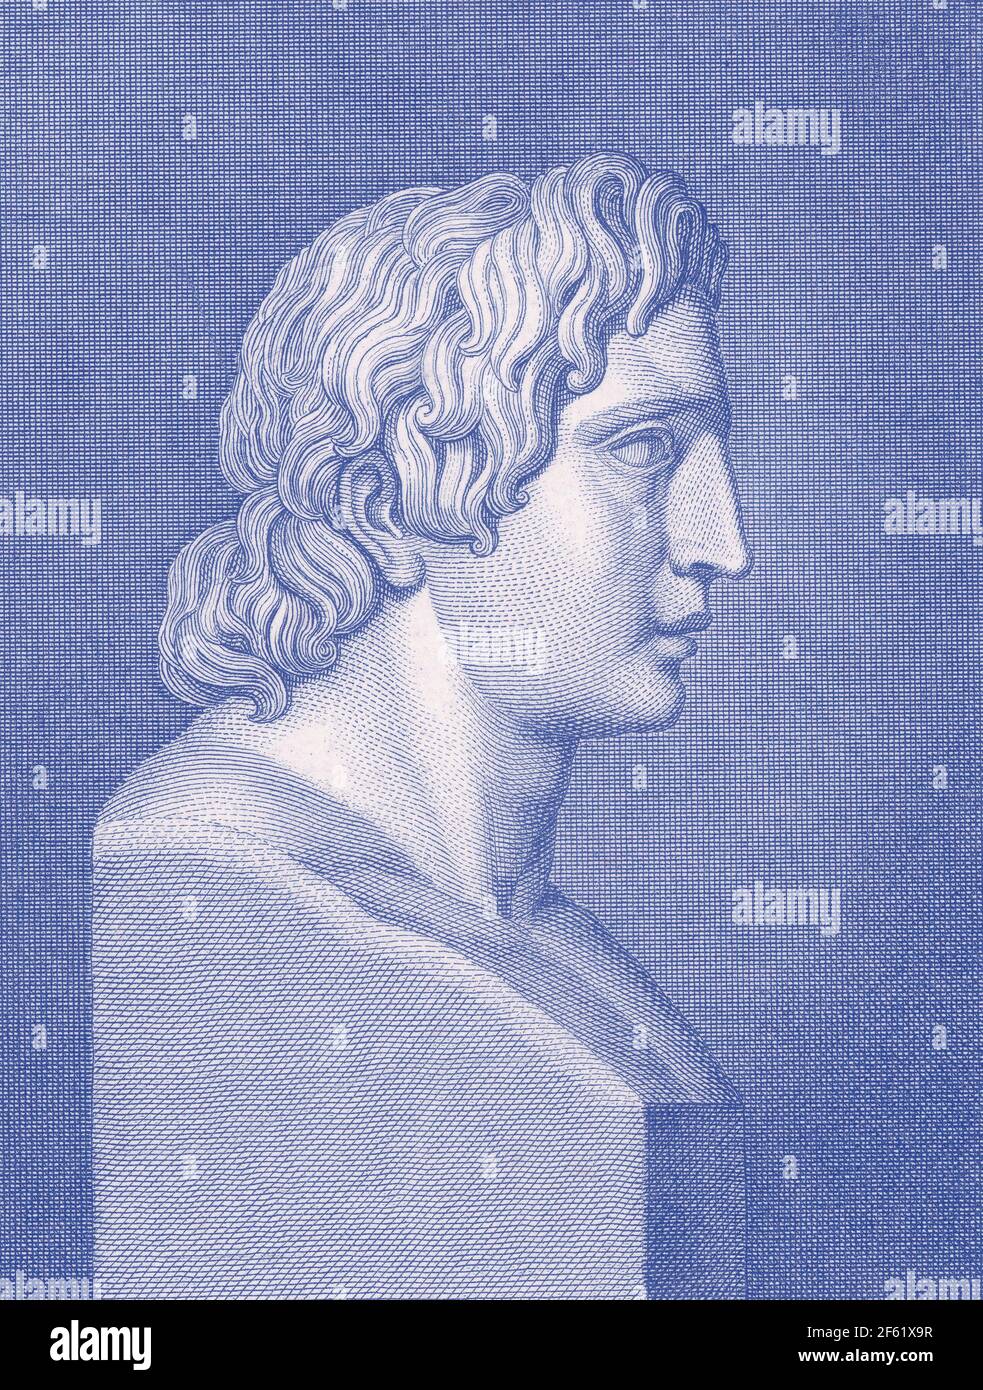 Alexander der große, König von Makedonien Stockfoto